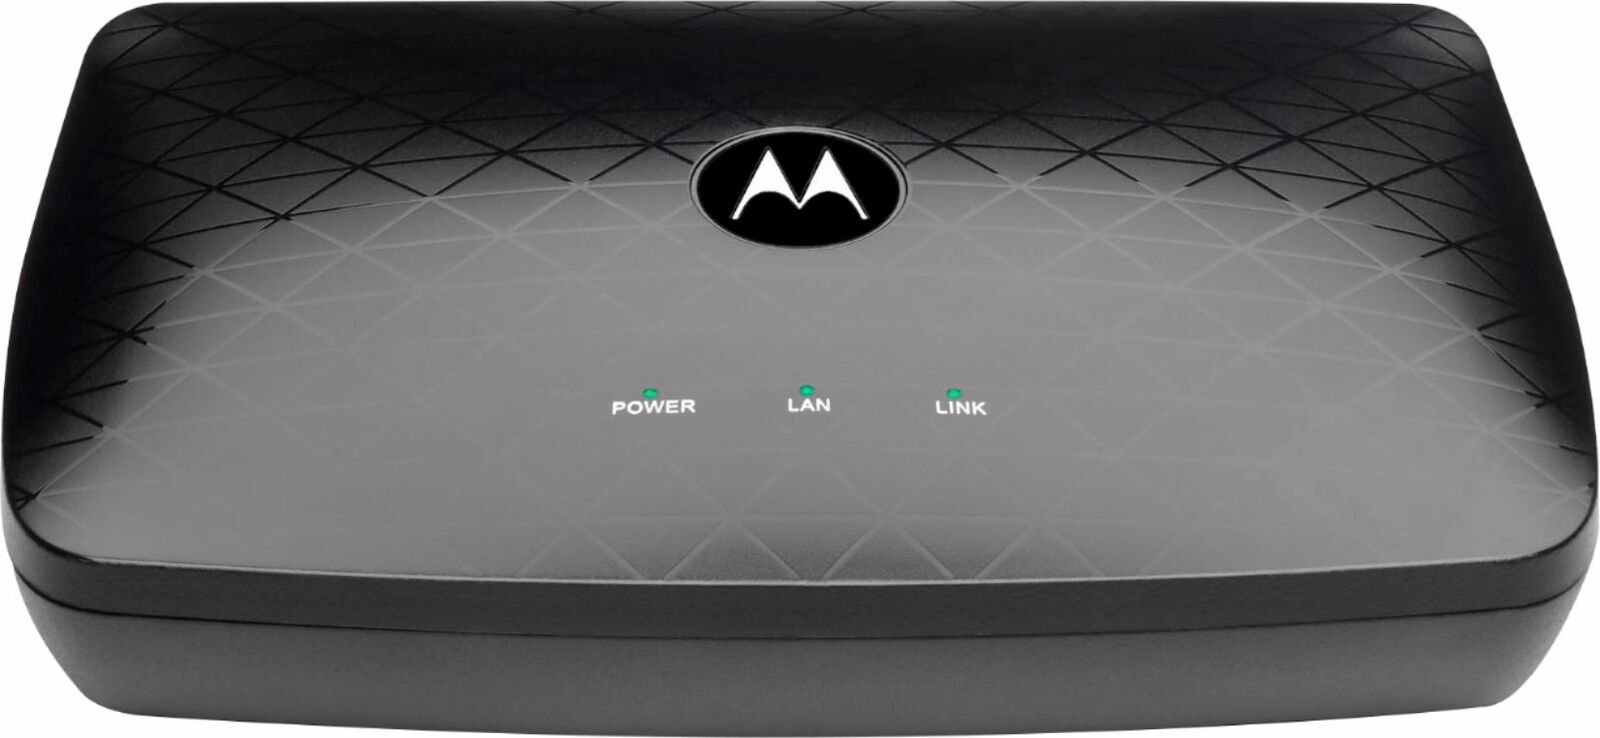 Motorola - MM1025 Bonded MoCA 2.5 Adapter - Black